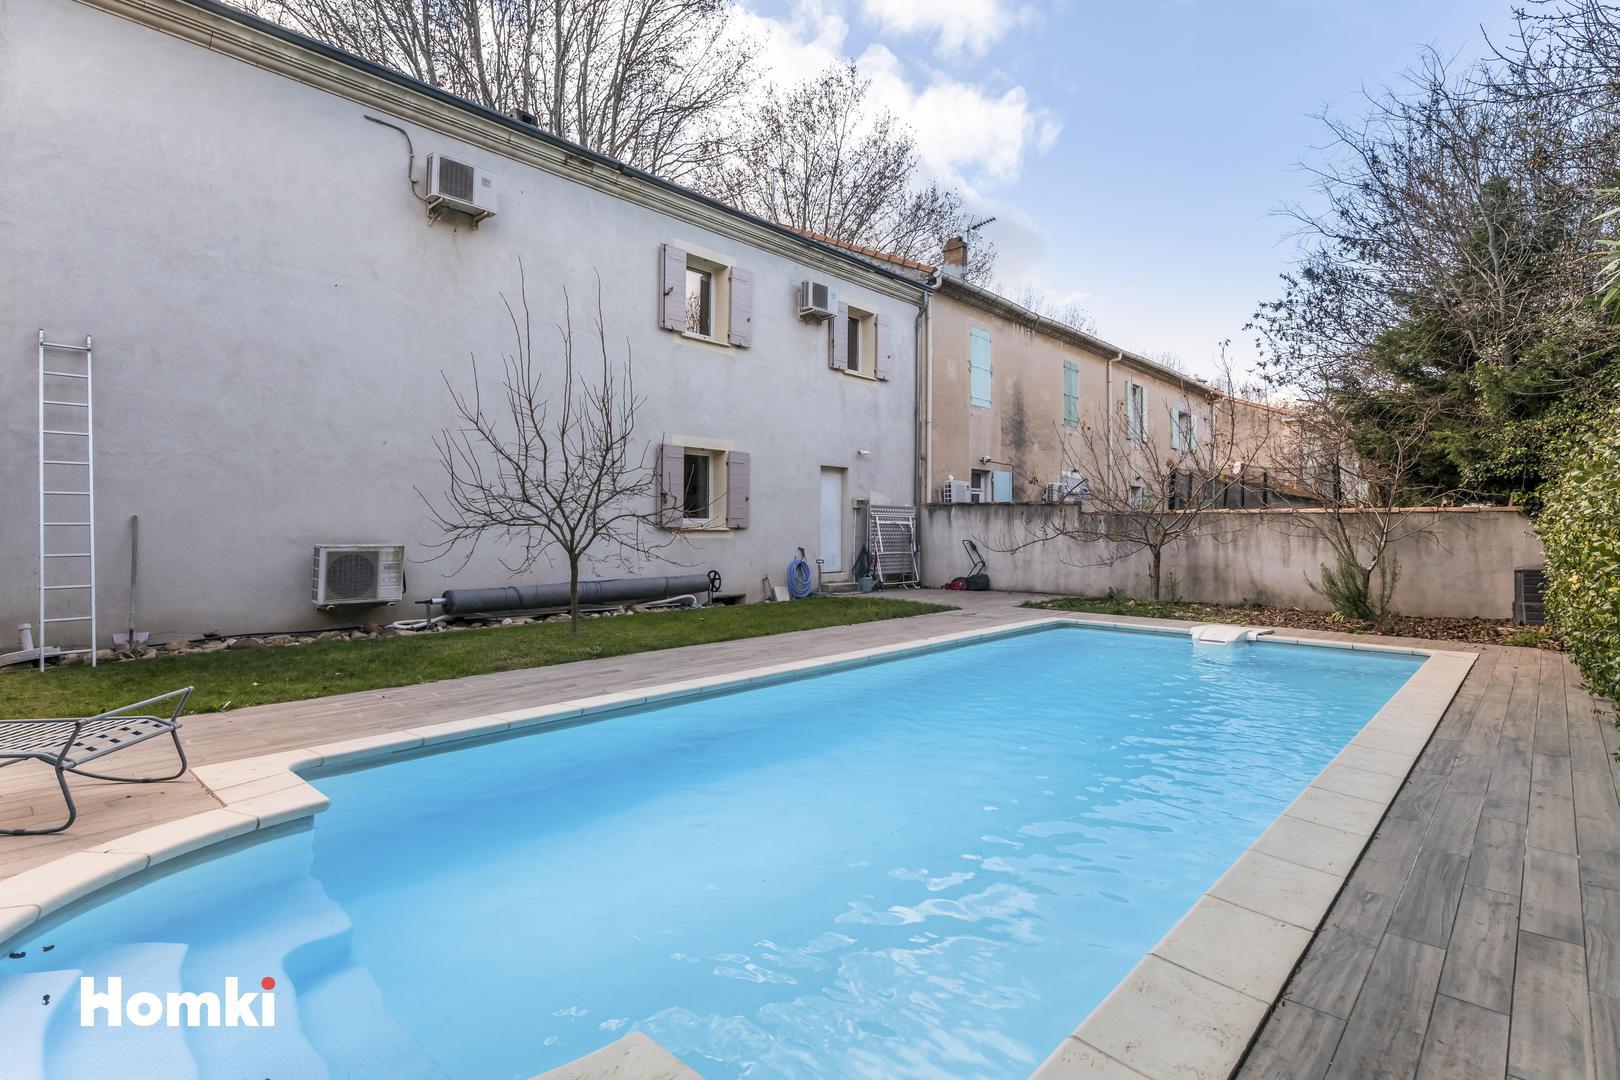 Homki - Vente Maison/villa  de 155.0 m² à Saint-Martin-de-Crau 13310